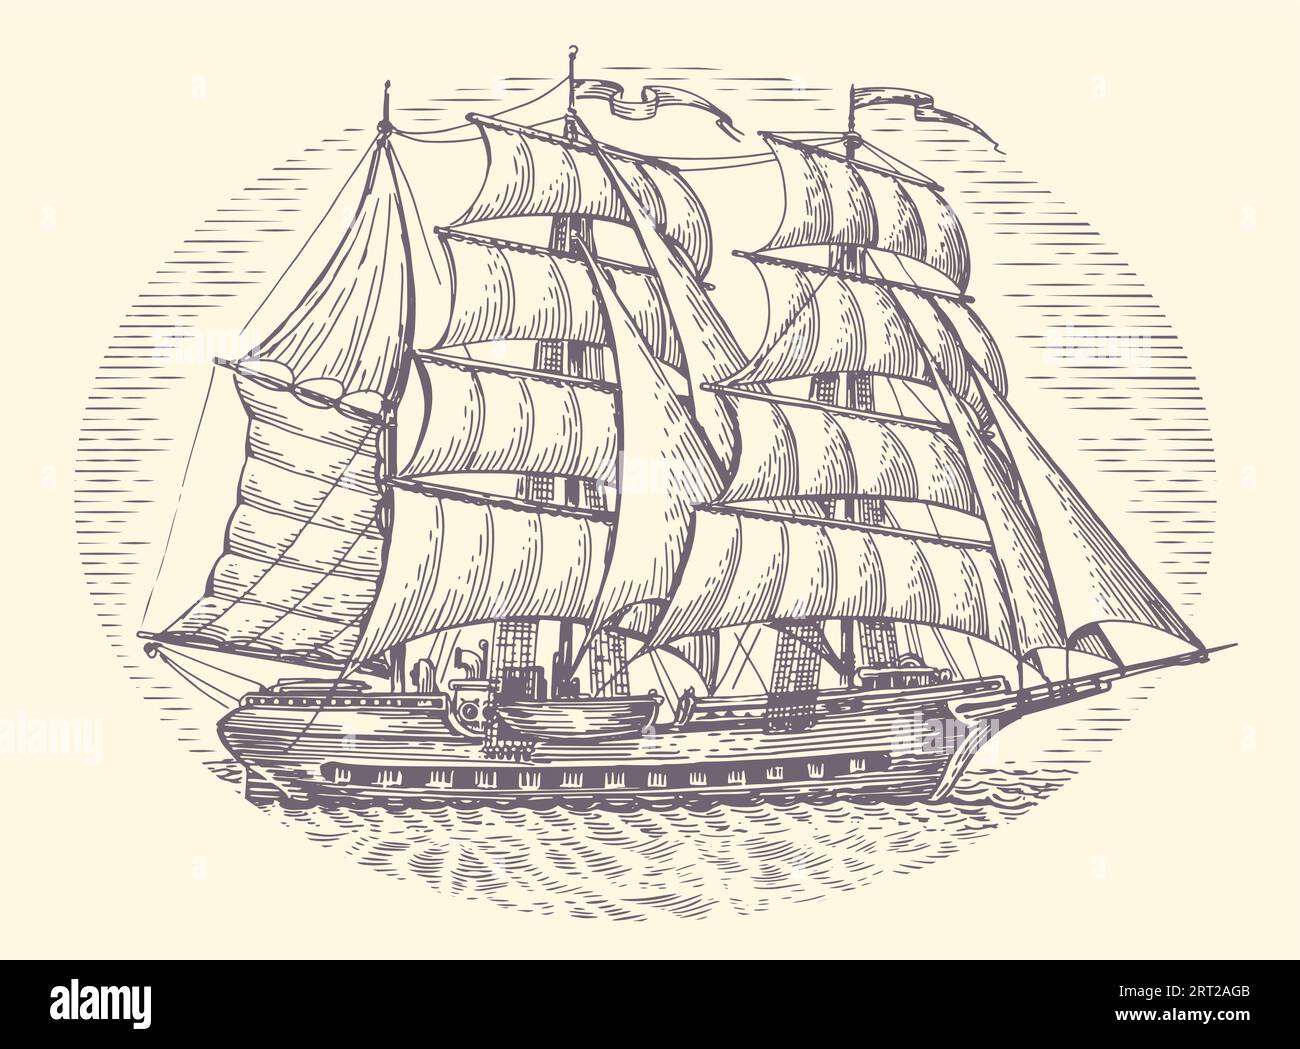 Vintage-Segelschiff im Meer im Gravurstil. Altes Segelboot mit Segeln. Handgezeichnete Skizzenvektorillustration Stock Vektor